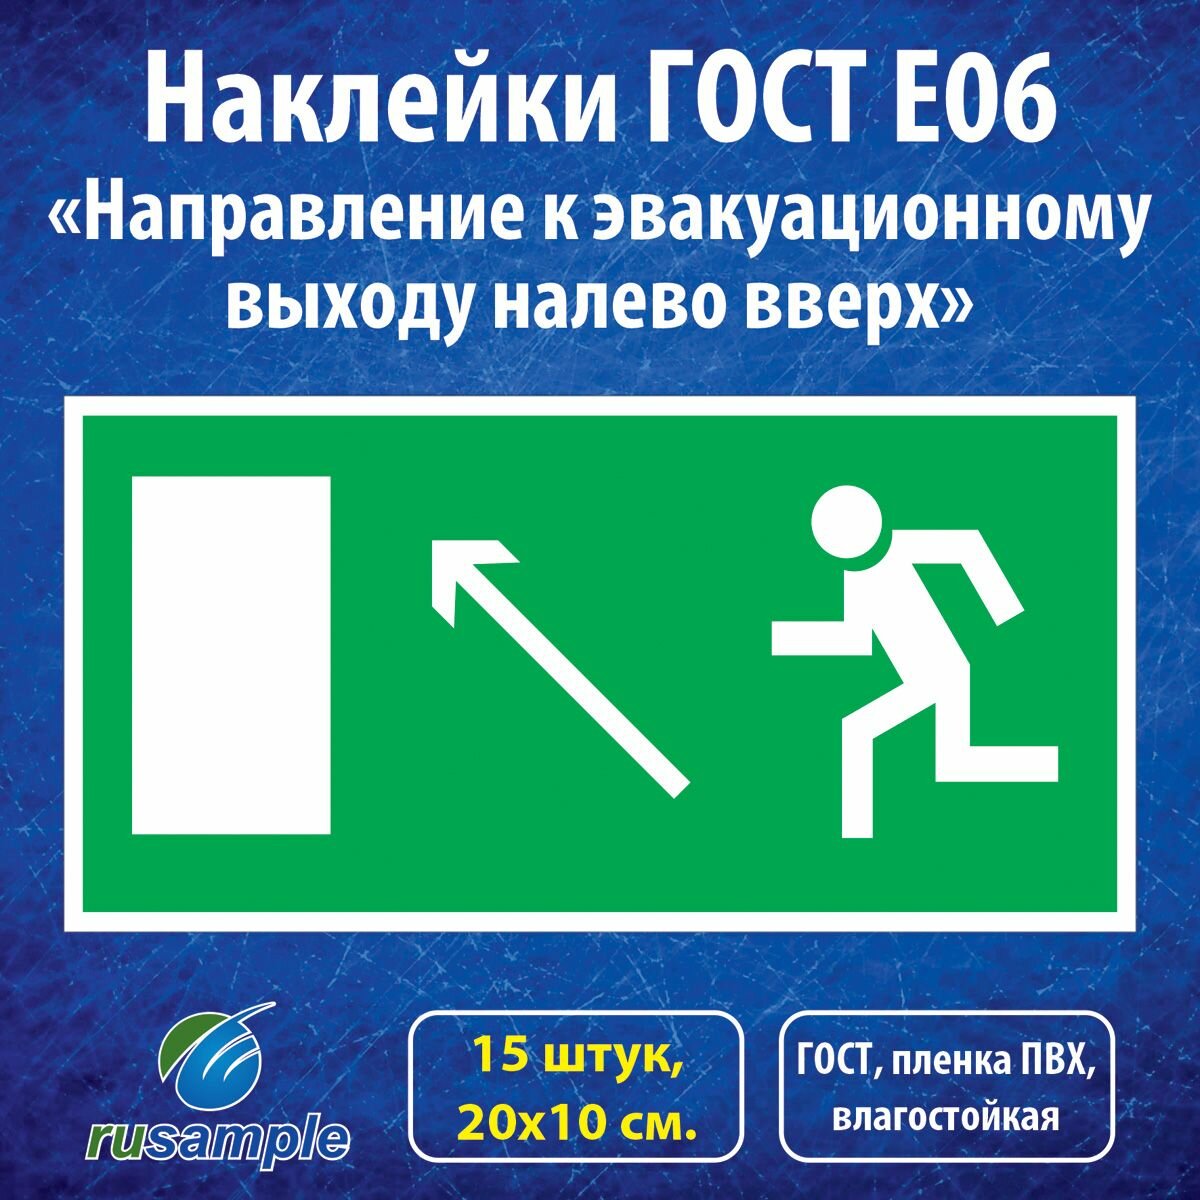 Наклейки E06 "Направление к эвакуационному выходу налево вверх", ГОСТ 20х10 см, 15 штук